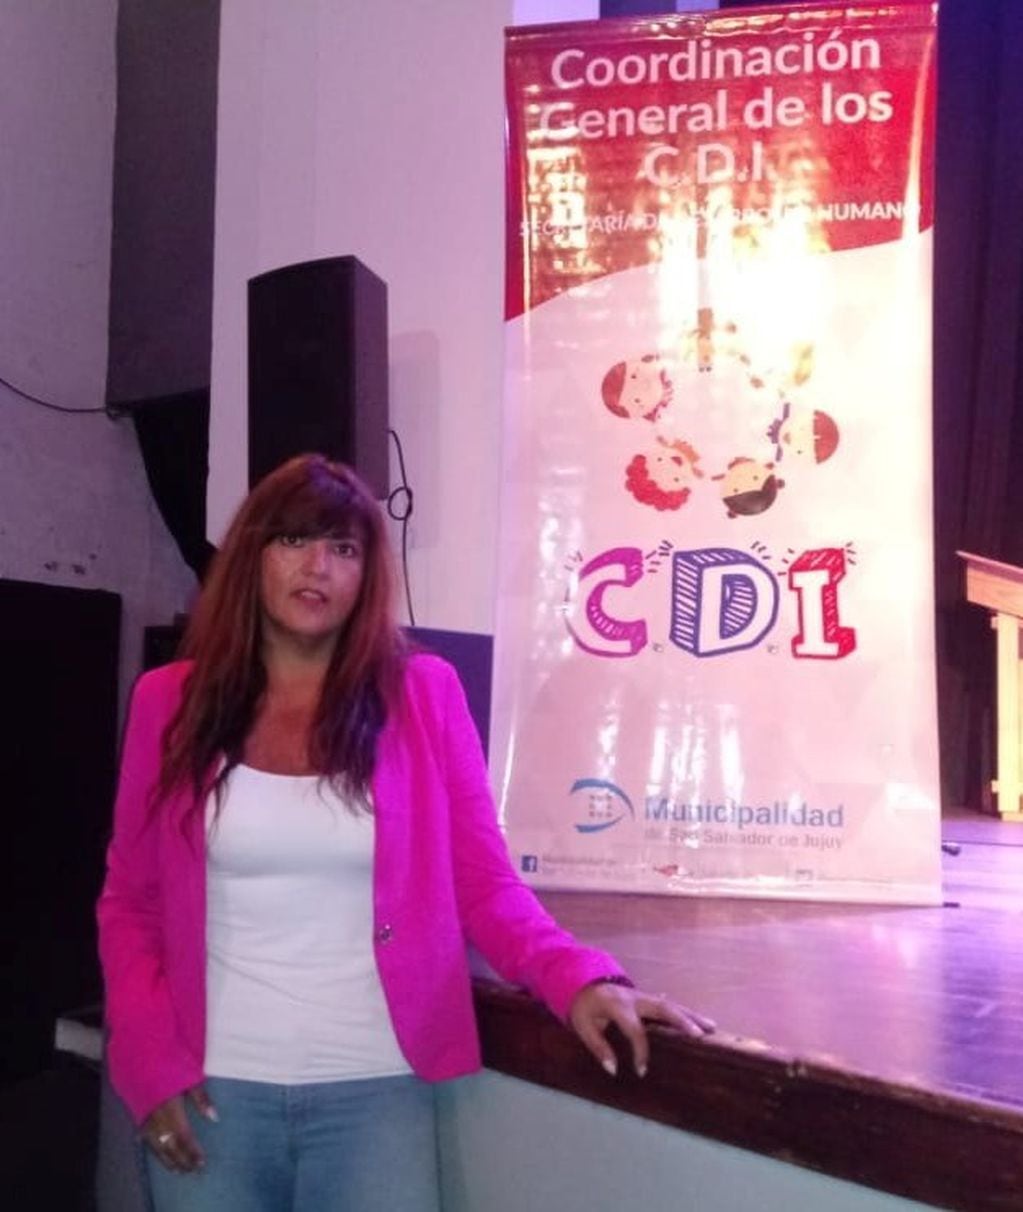 Miriam Garzón, coordinadora general de los CDI de la Municipalidad de San Salvador de Jujuy.